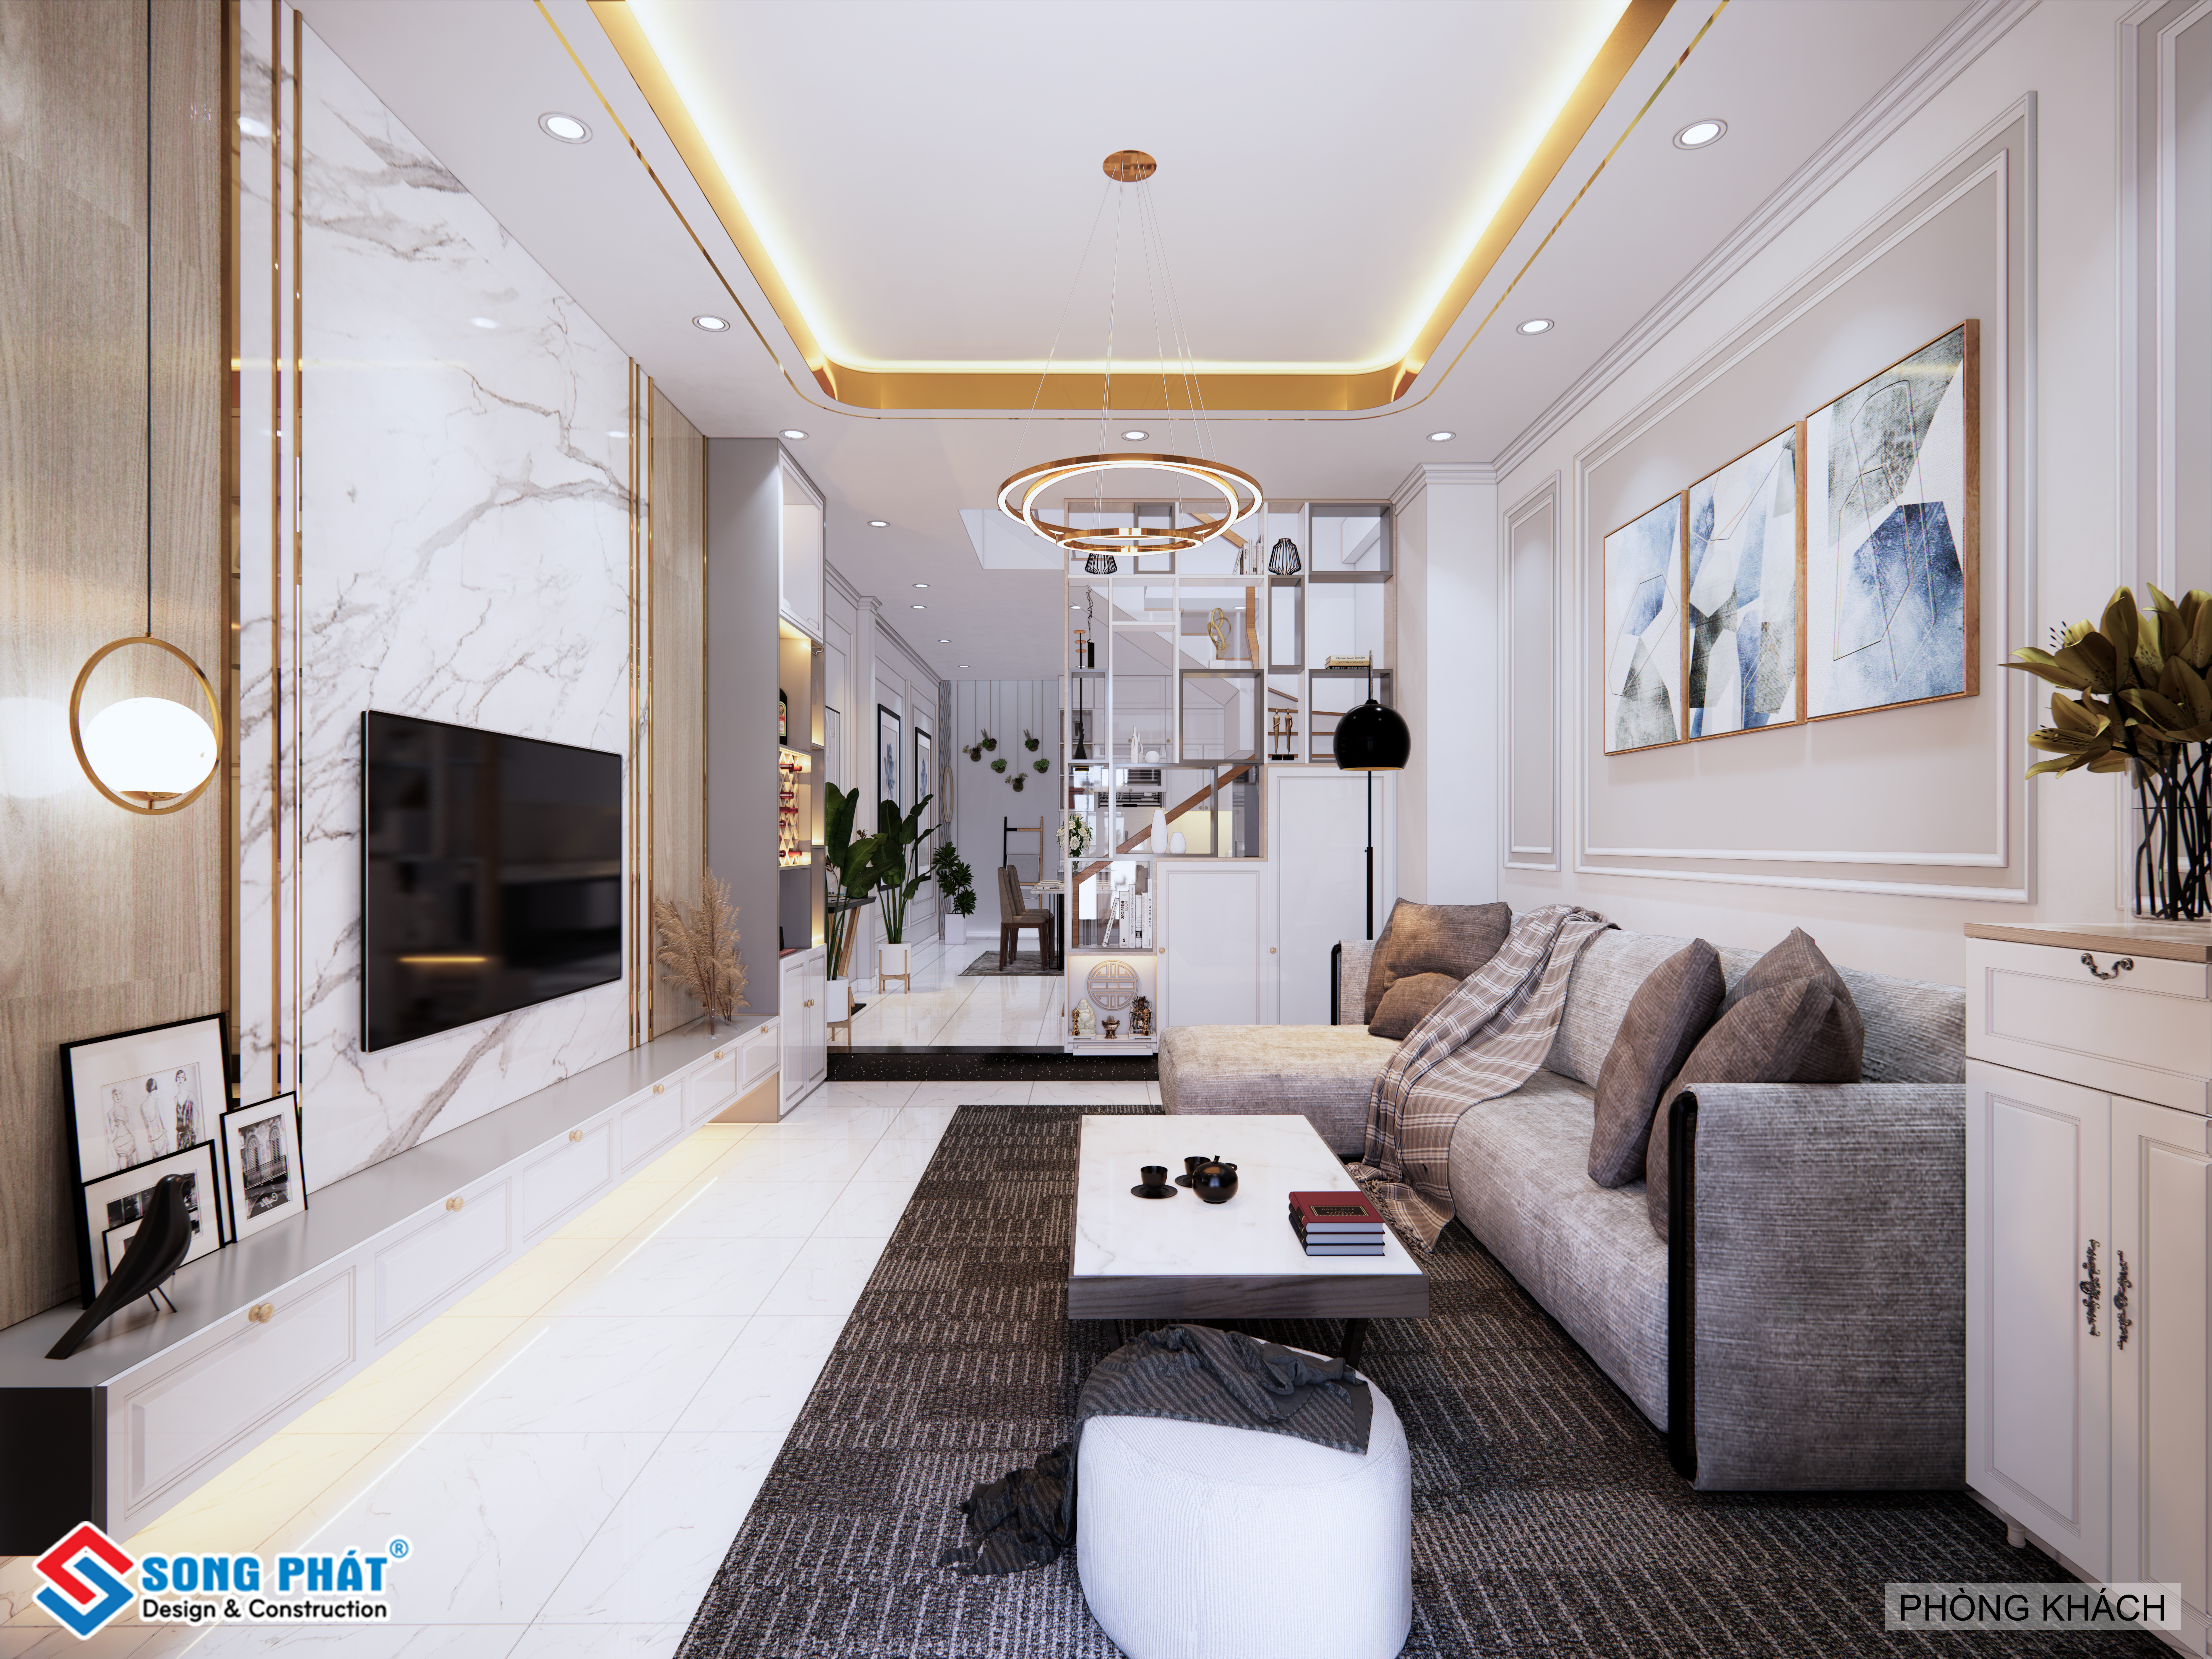 Món đồ nội thất trang trí phòng khách luôn là lựa chọn hàng đầu của những người yêu thích sự đẳng cấp trong cách thiết kế không gian sống của mình. Hãy đến với chúng tôi và khám phá những ý tưởng thiết kế phòng khách đa dạng, đẳng cấp và sang trọng để tạo nên không gian sống độc đáo và đẳng cấp cho ngôi nhà của bạn.